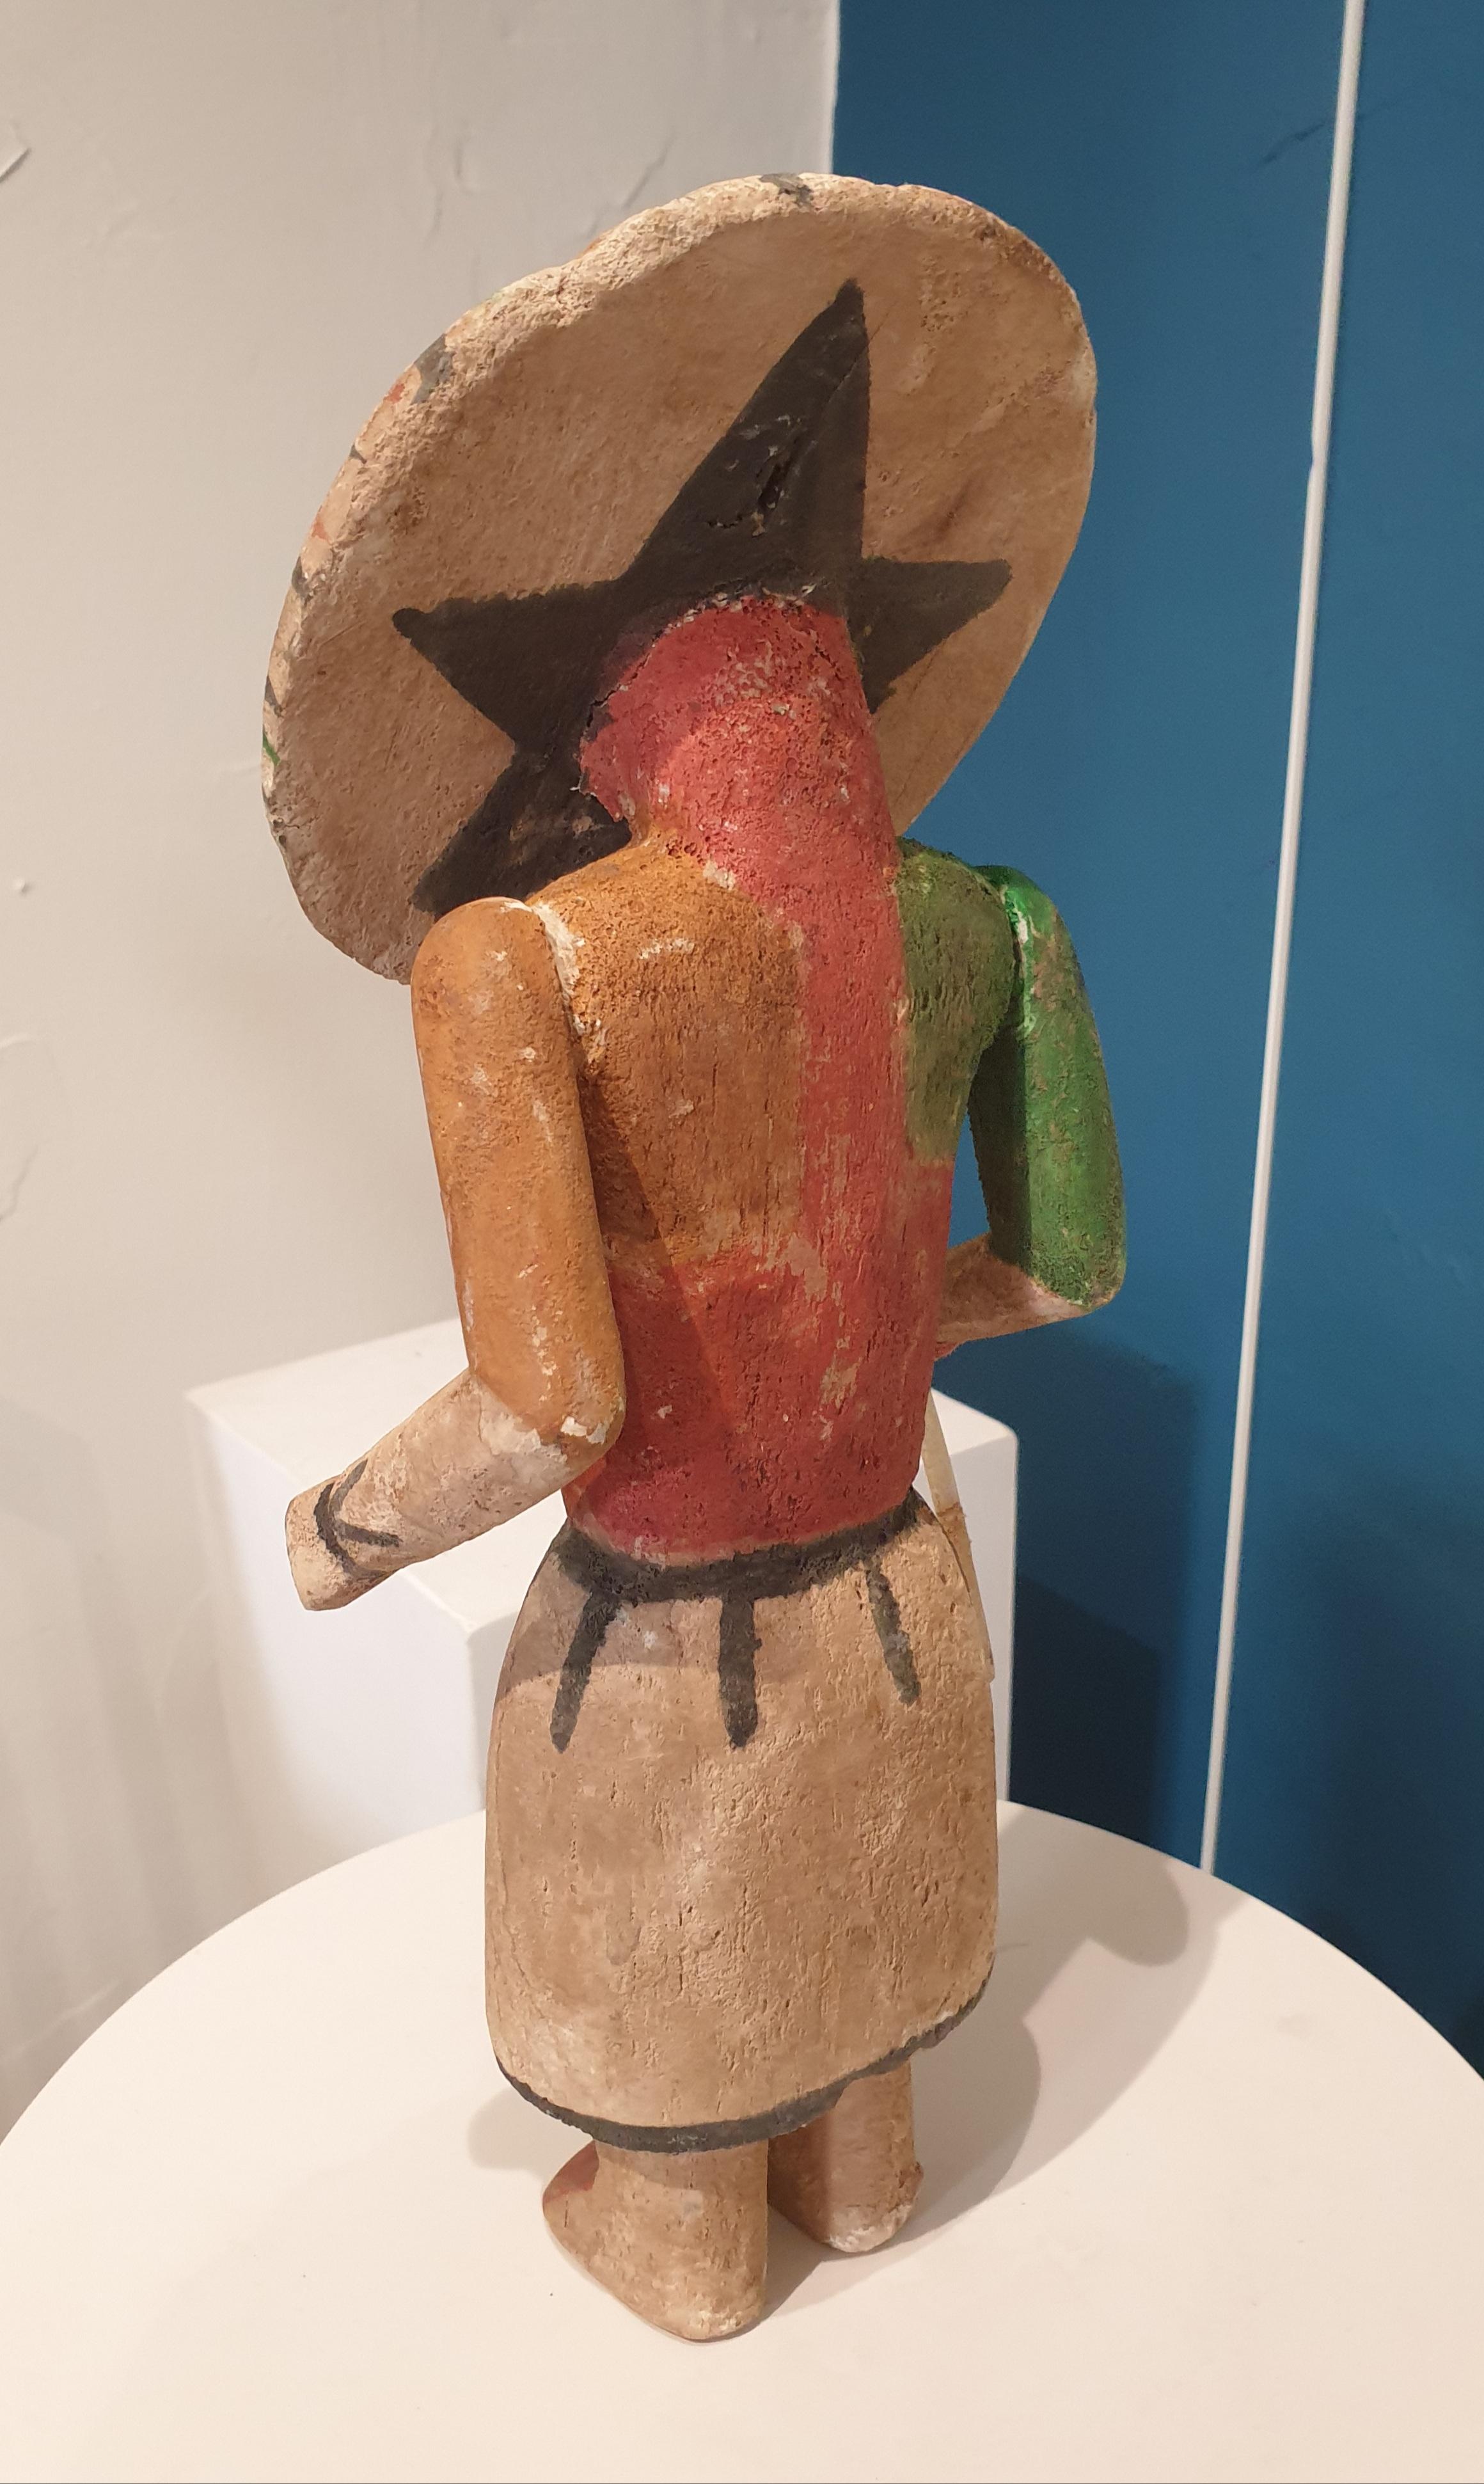 Aus Holz geschnitzte, bemalte und gegliederte Figur der nordamerikanischen Ureinwohner, Hopi Katsina oder Kachina-Puppe.  Diese Puppe gehört zu einer Gruppe von acht Puppen, die alle einzeln oder als Set bei 1stdibs erhältlich sind.

Hopi